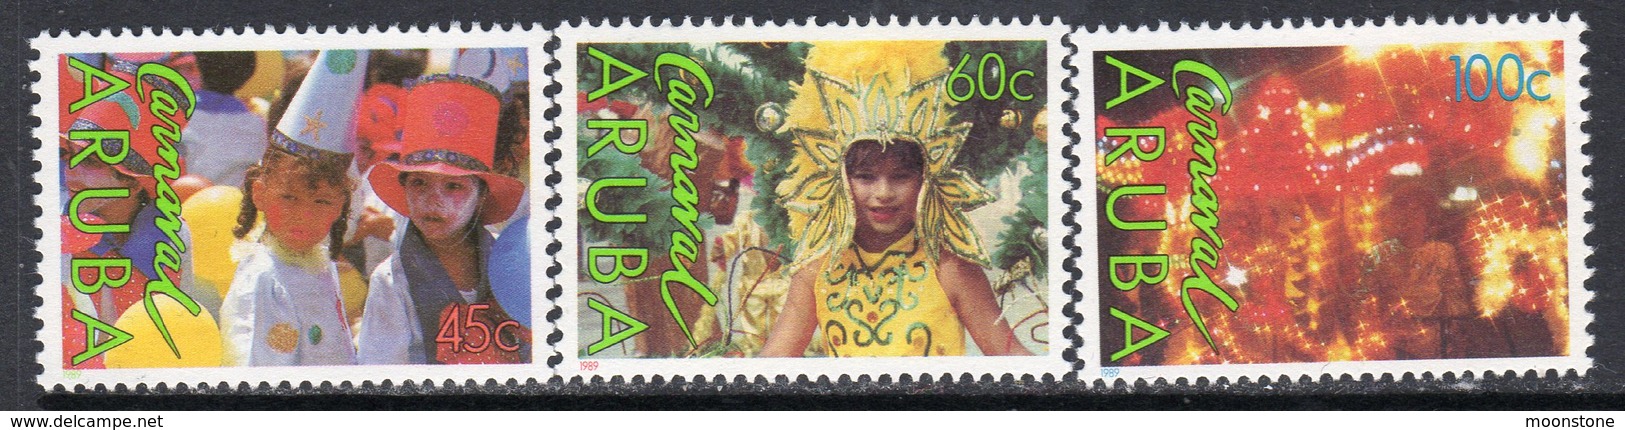 Aruba 1989 Carnival Set Of 3, MNH, SG 58/60 (A) - Curaçao, Nederlandse Antillen, Aruba